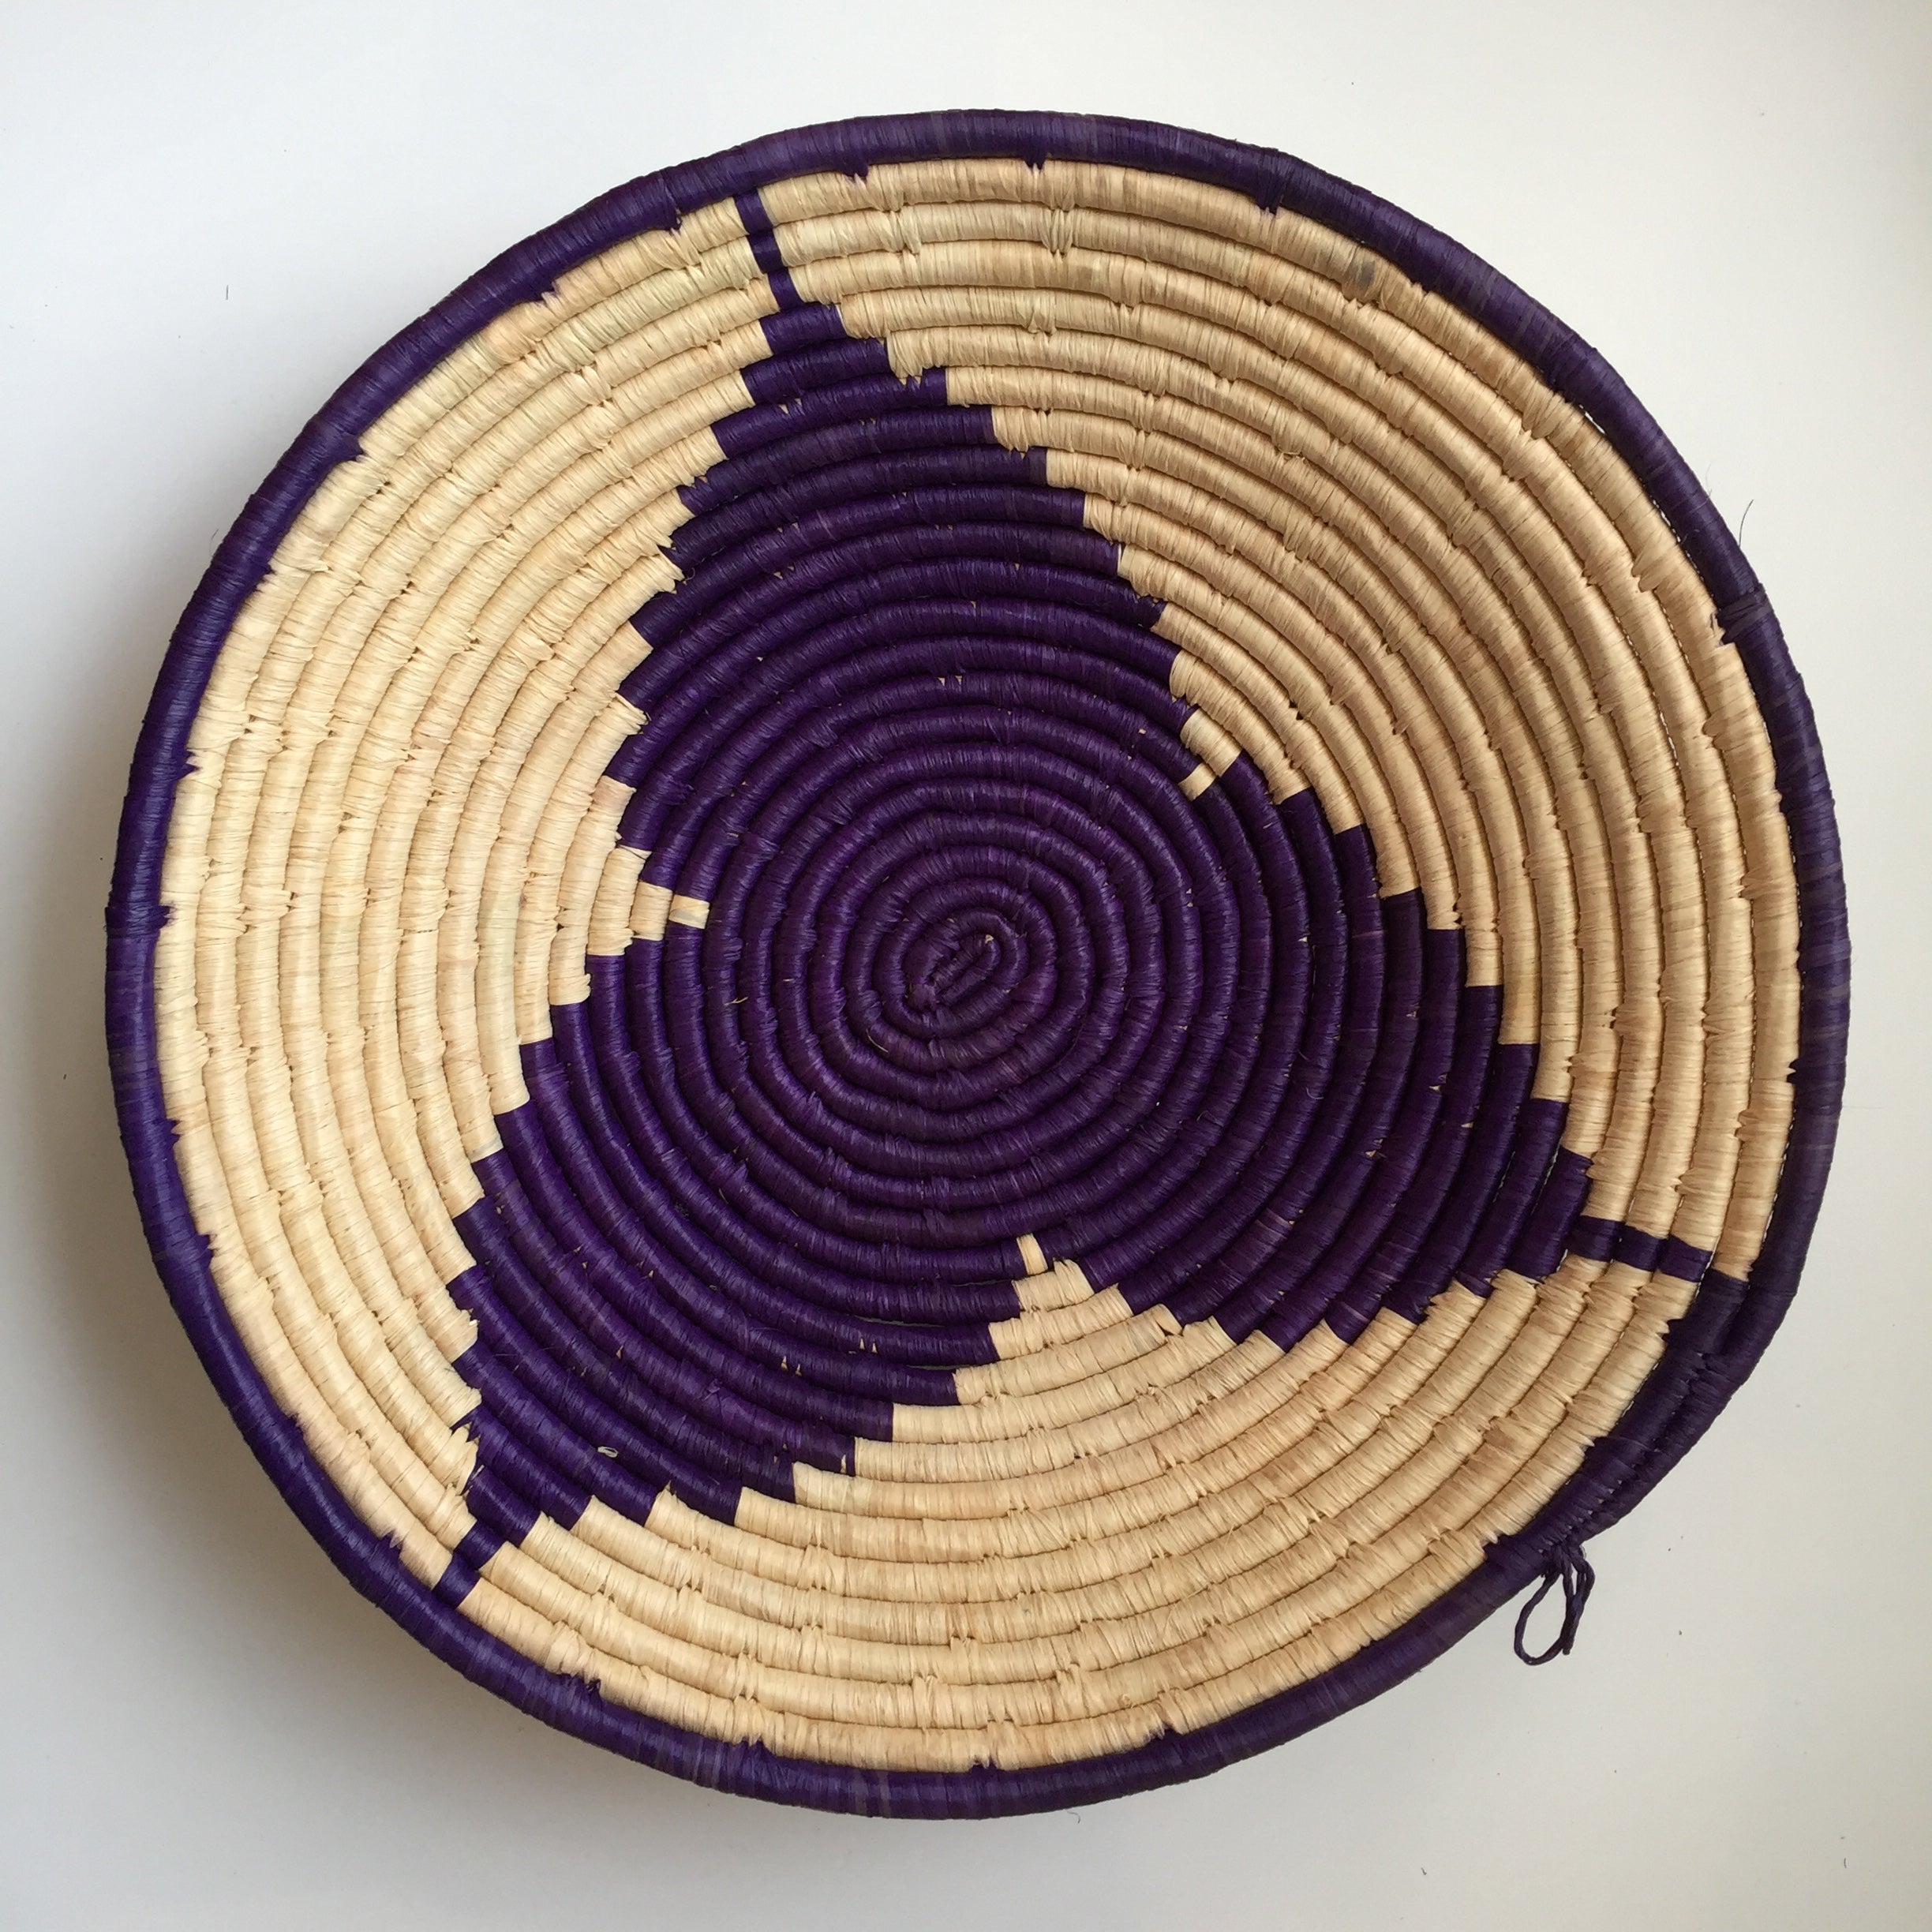 Purple star woven basket